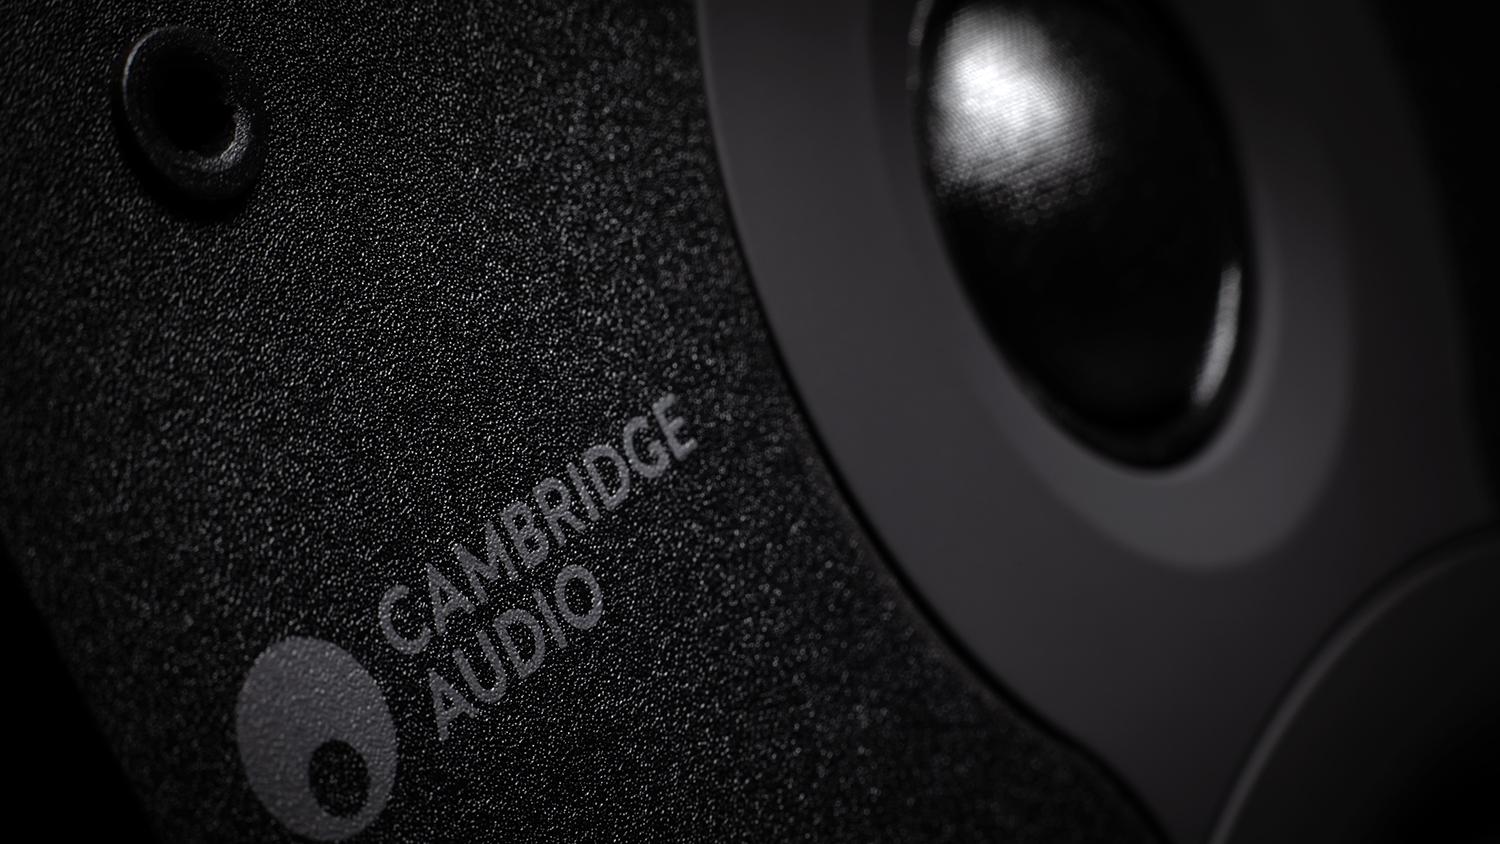 LOA BOOKSHELF CAMBRIDGE AUDIO SX-50